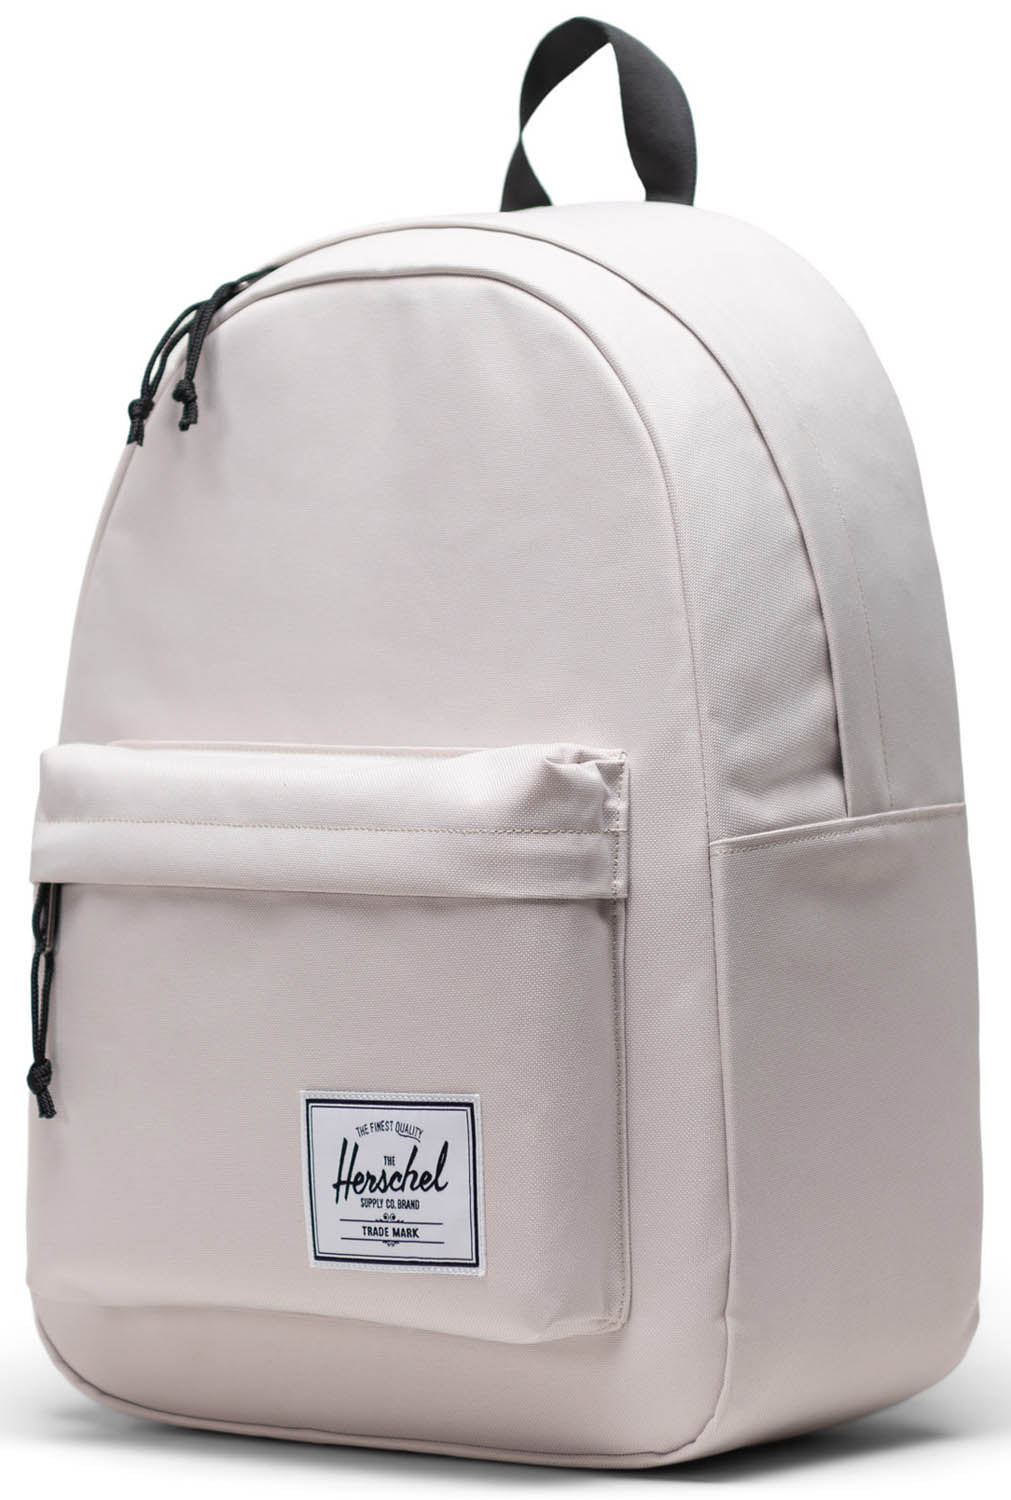 Herschel Classic Backpack - Moonbeam